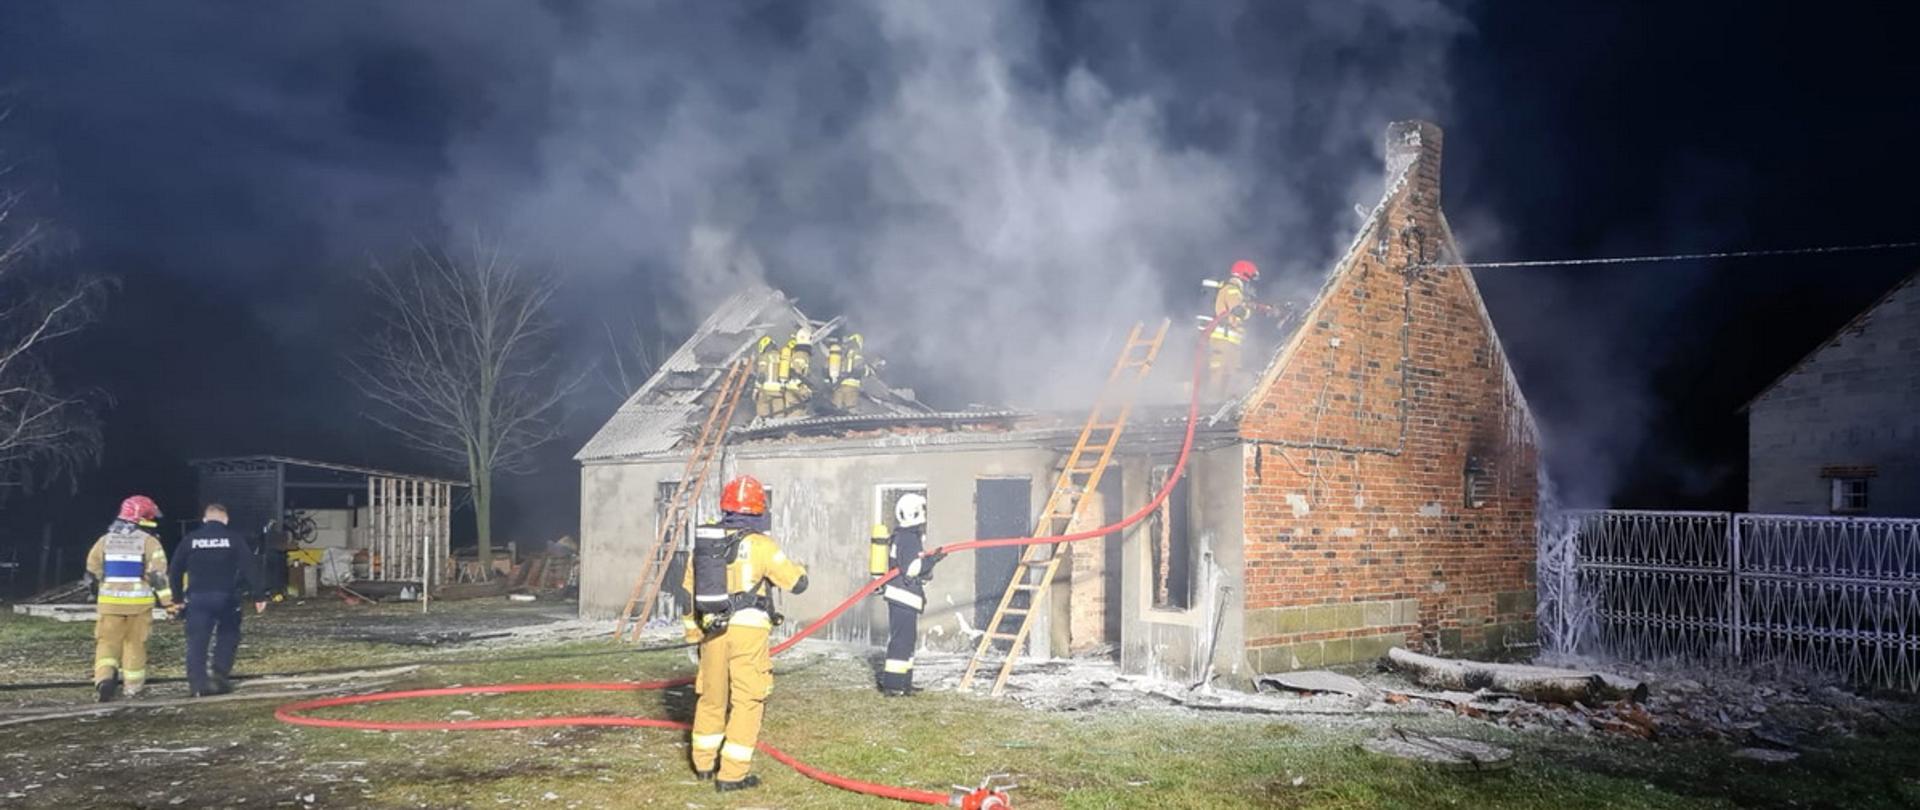 Noc strażacy prowadzą działania gaśnicze podczas pożaru budynku gospodarczego, część z nich znajduje się na stropie rozbierając i dogaszając spalony dach